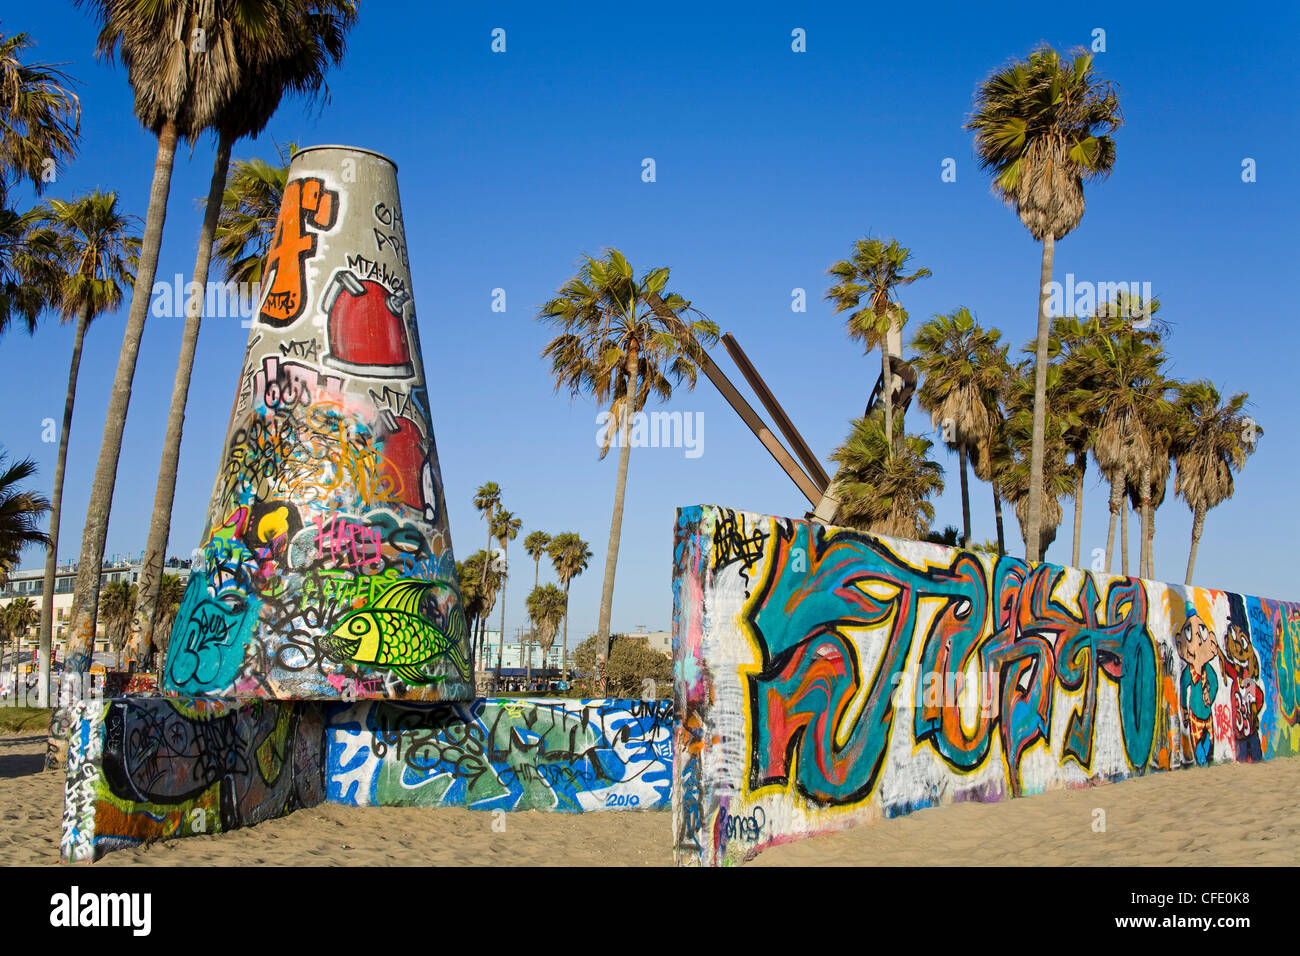 Les murs, l'art graffiti juridique, sur la plage de Venice, Los Angeles, Californie, États-Unis d'Amérique, Banque D'Images